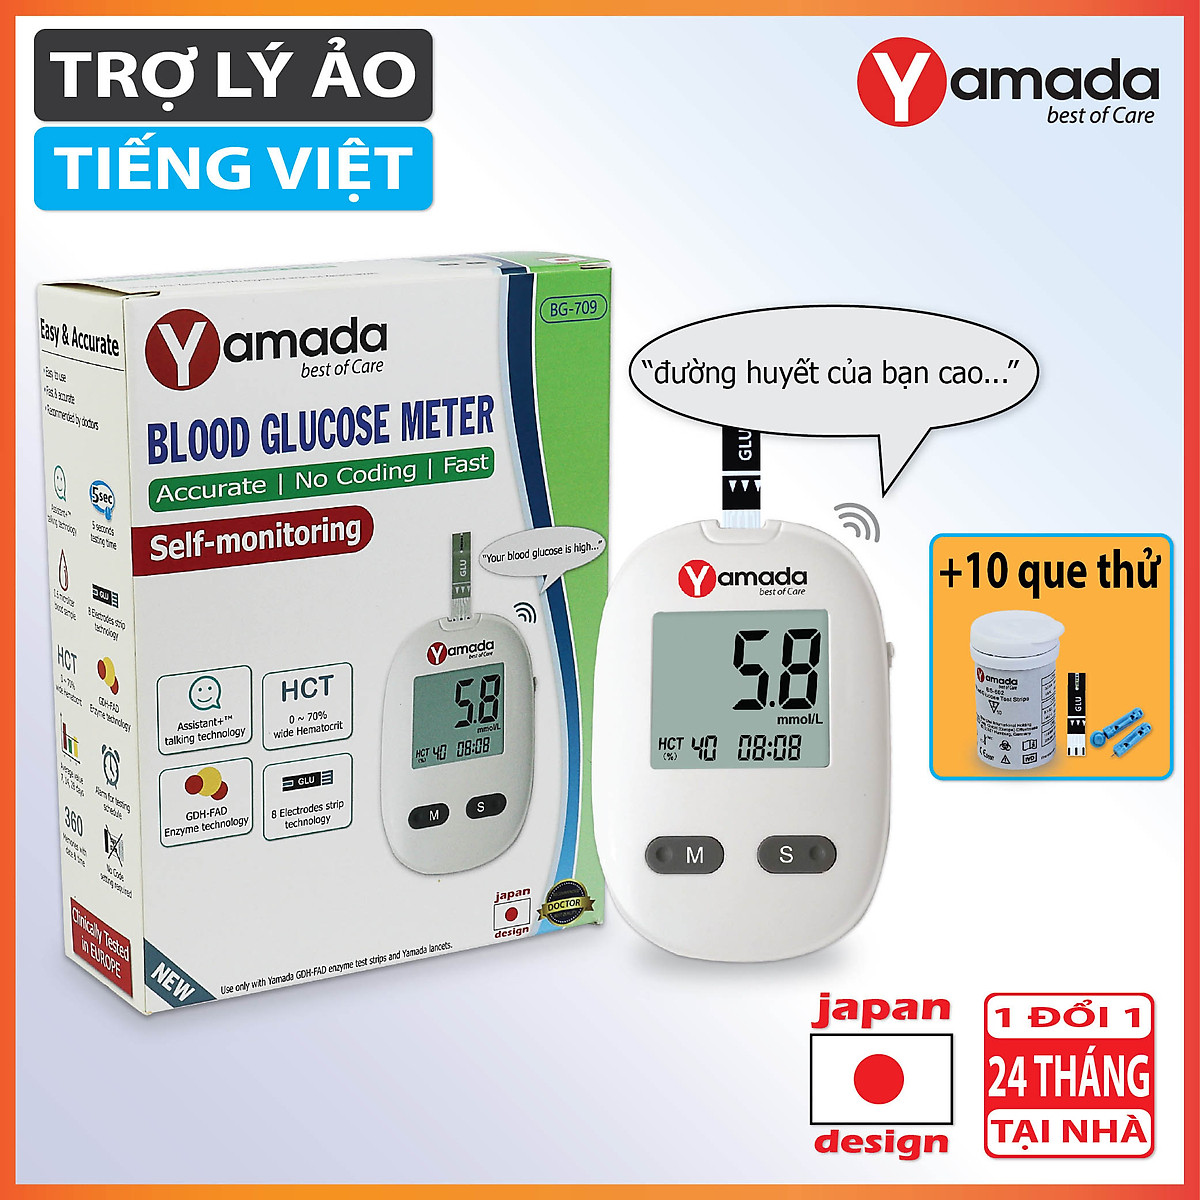 Máy đo đường huyết Yamada - Giọng nói tiếng Việt thông minh, đo chỉ số hồng cầu HCT, tặng 10 que thử